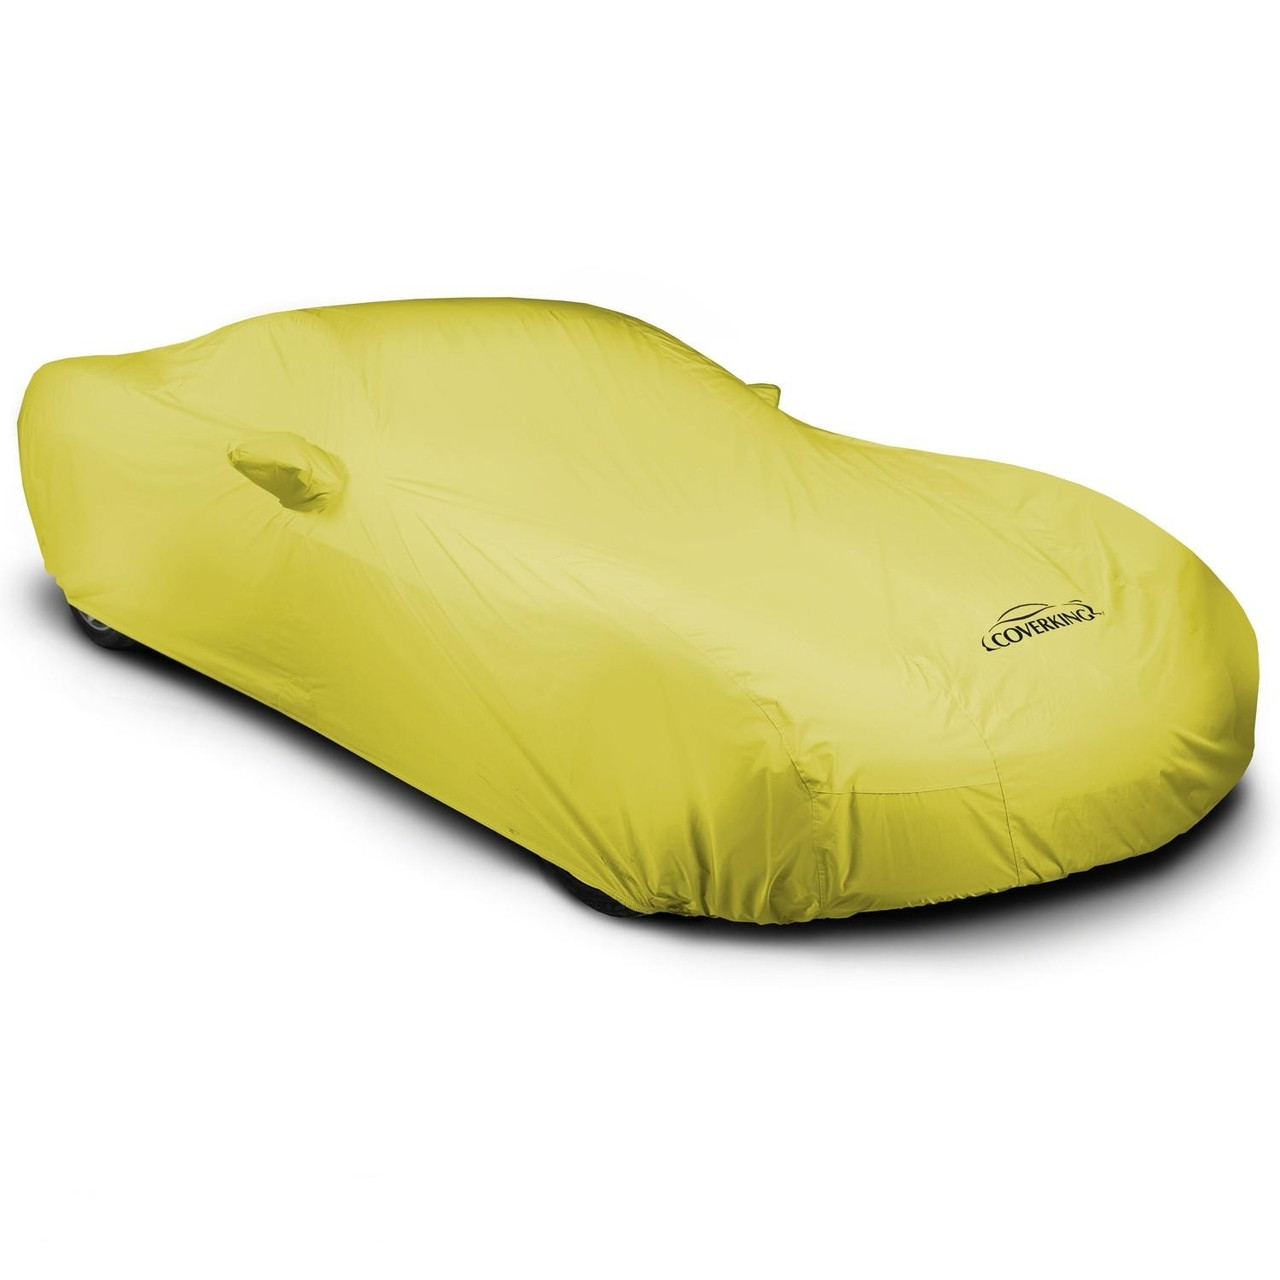 Corvette Outdoor Car Cover - Yellow